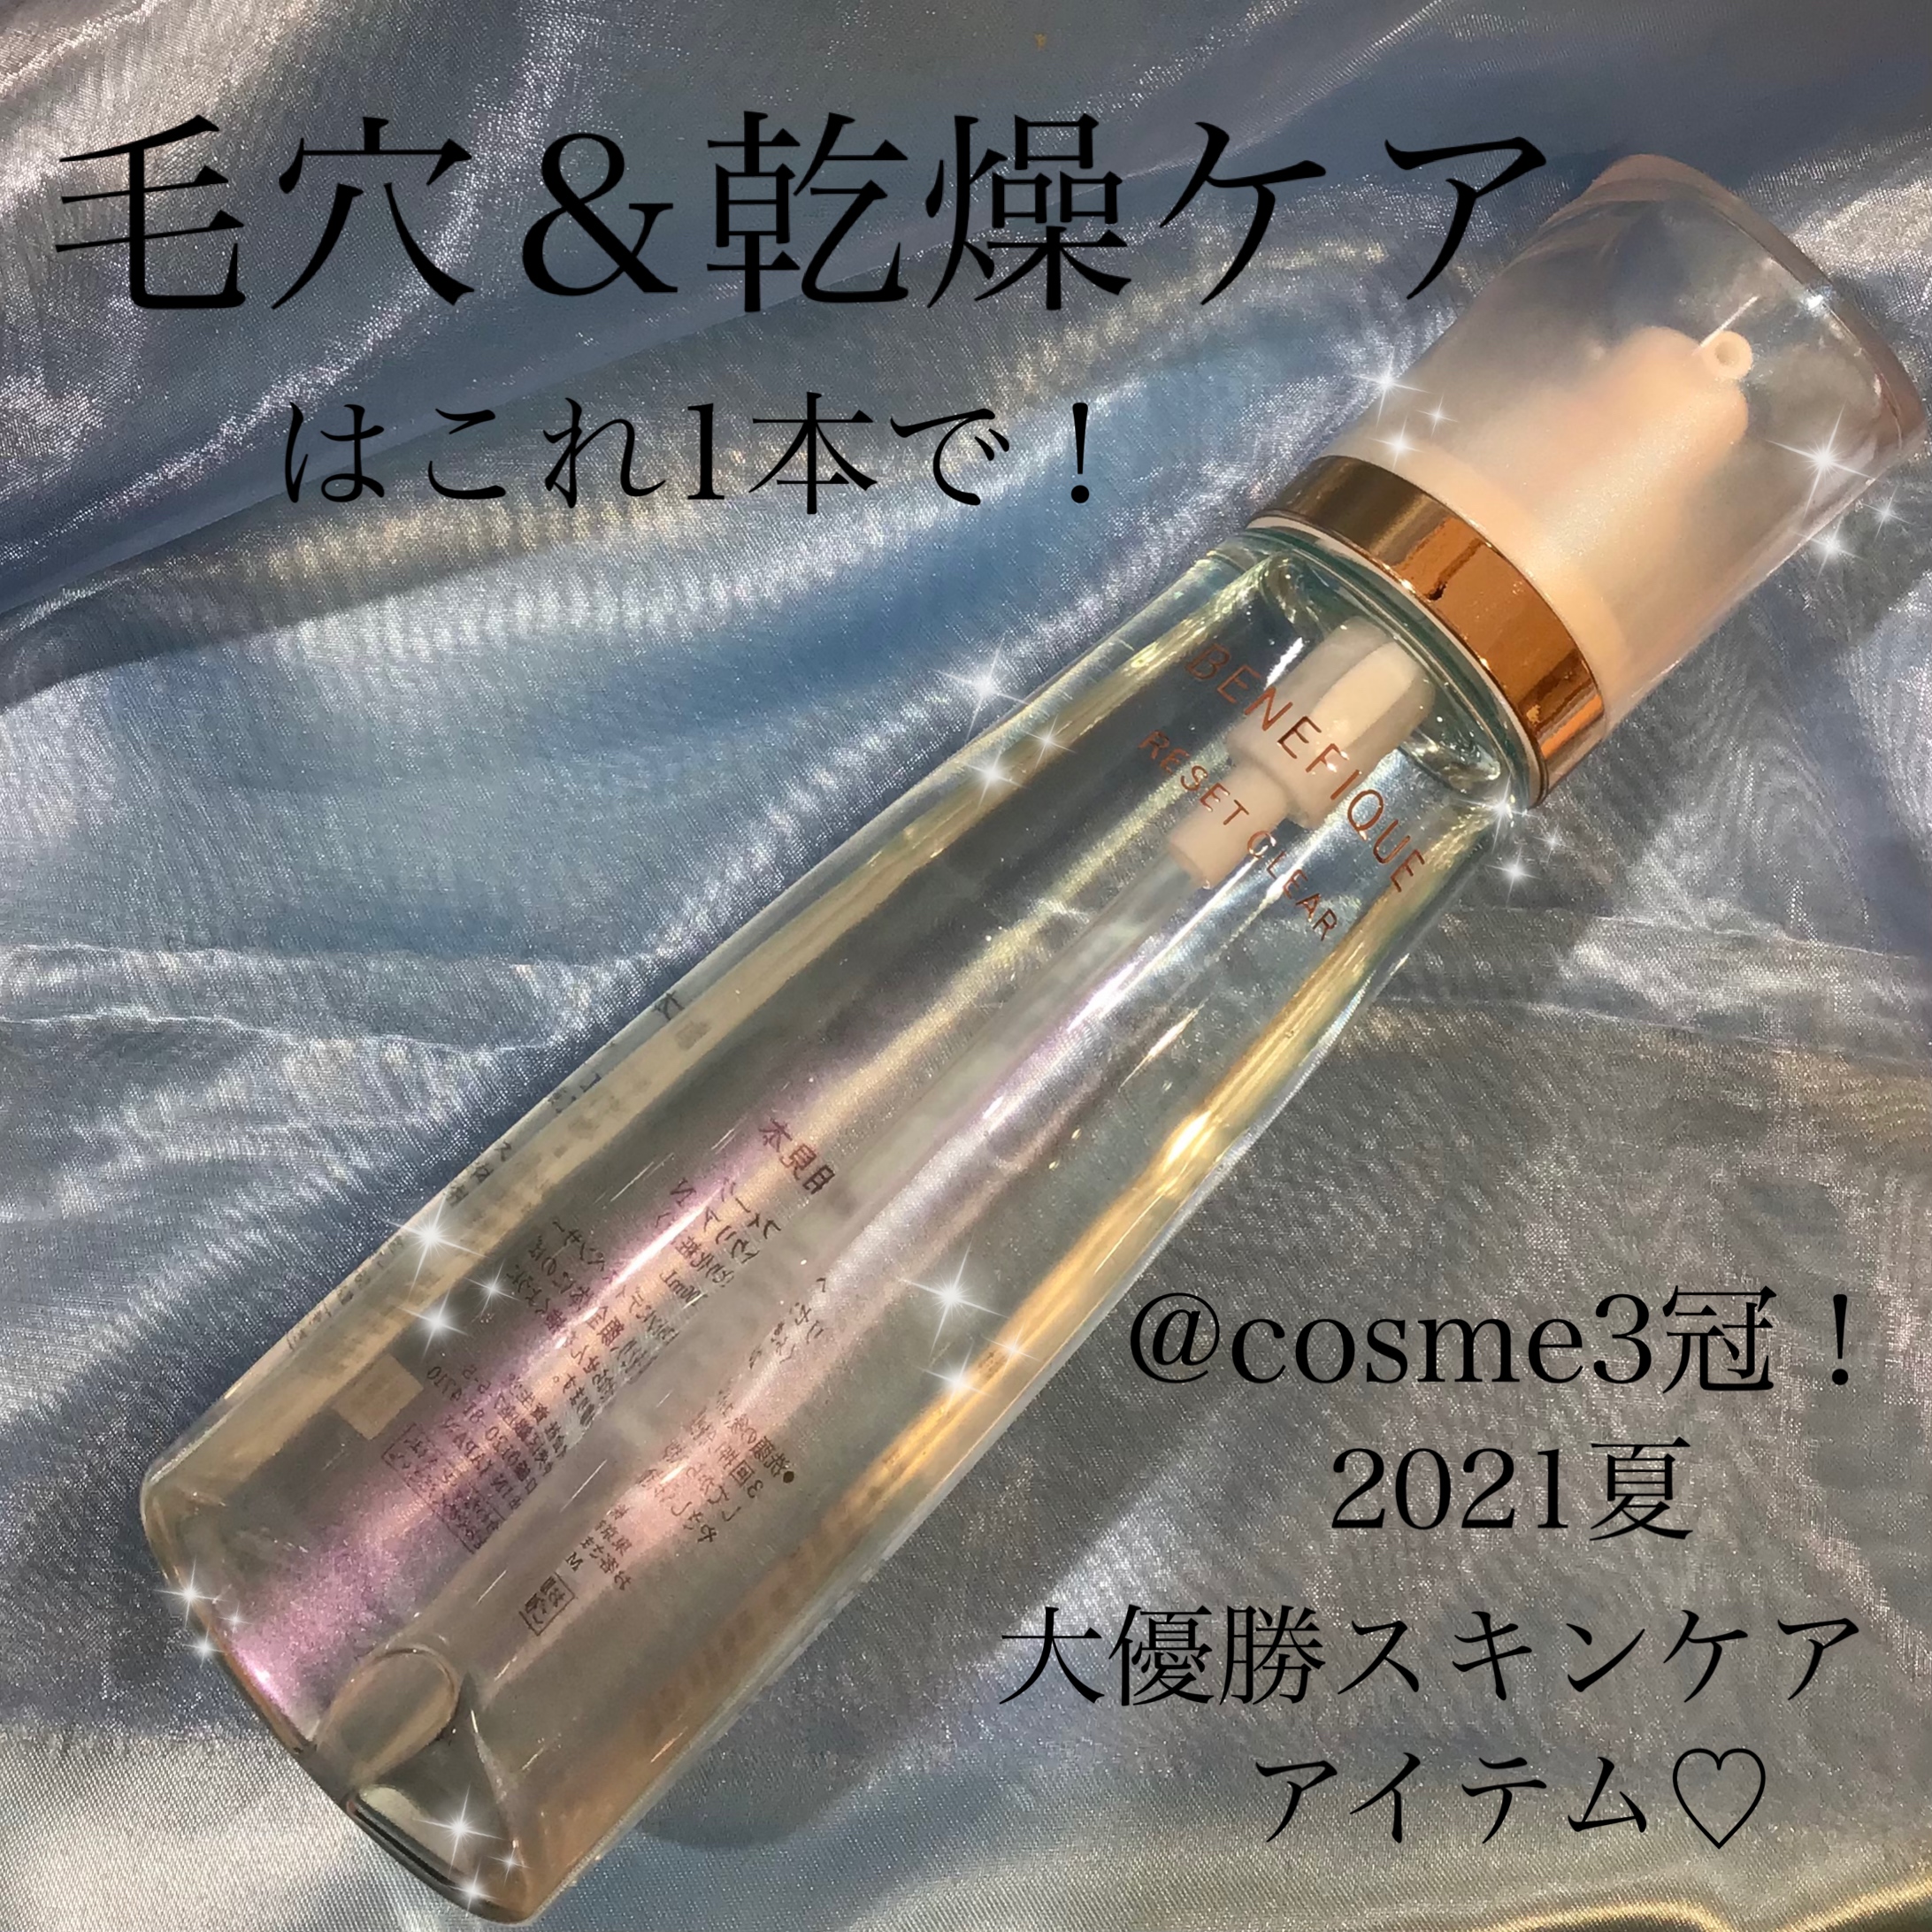 ベネフィーク 拭き取り化粧水 リセットクリア - 化粧品専門店